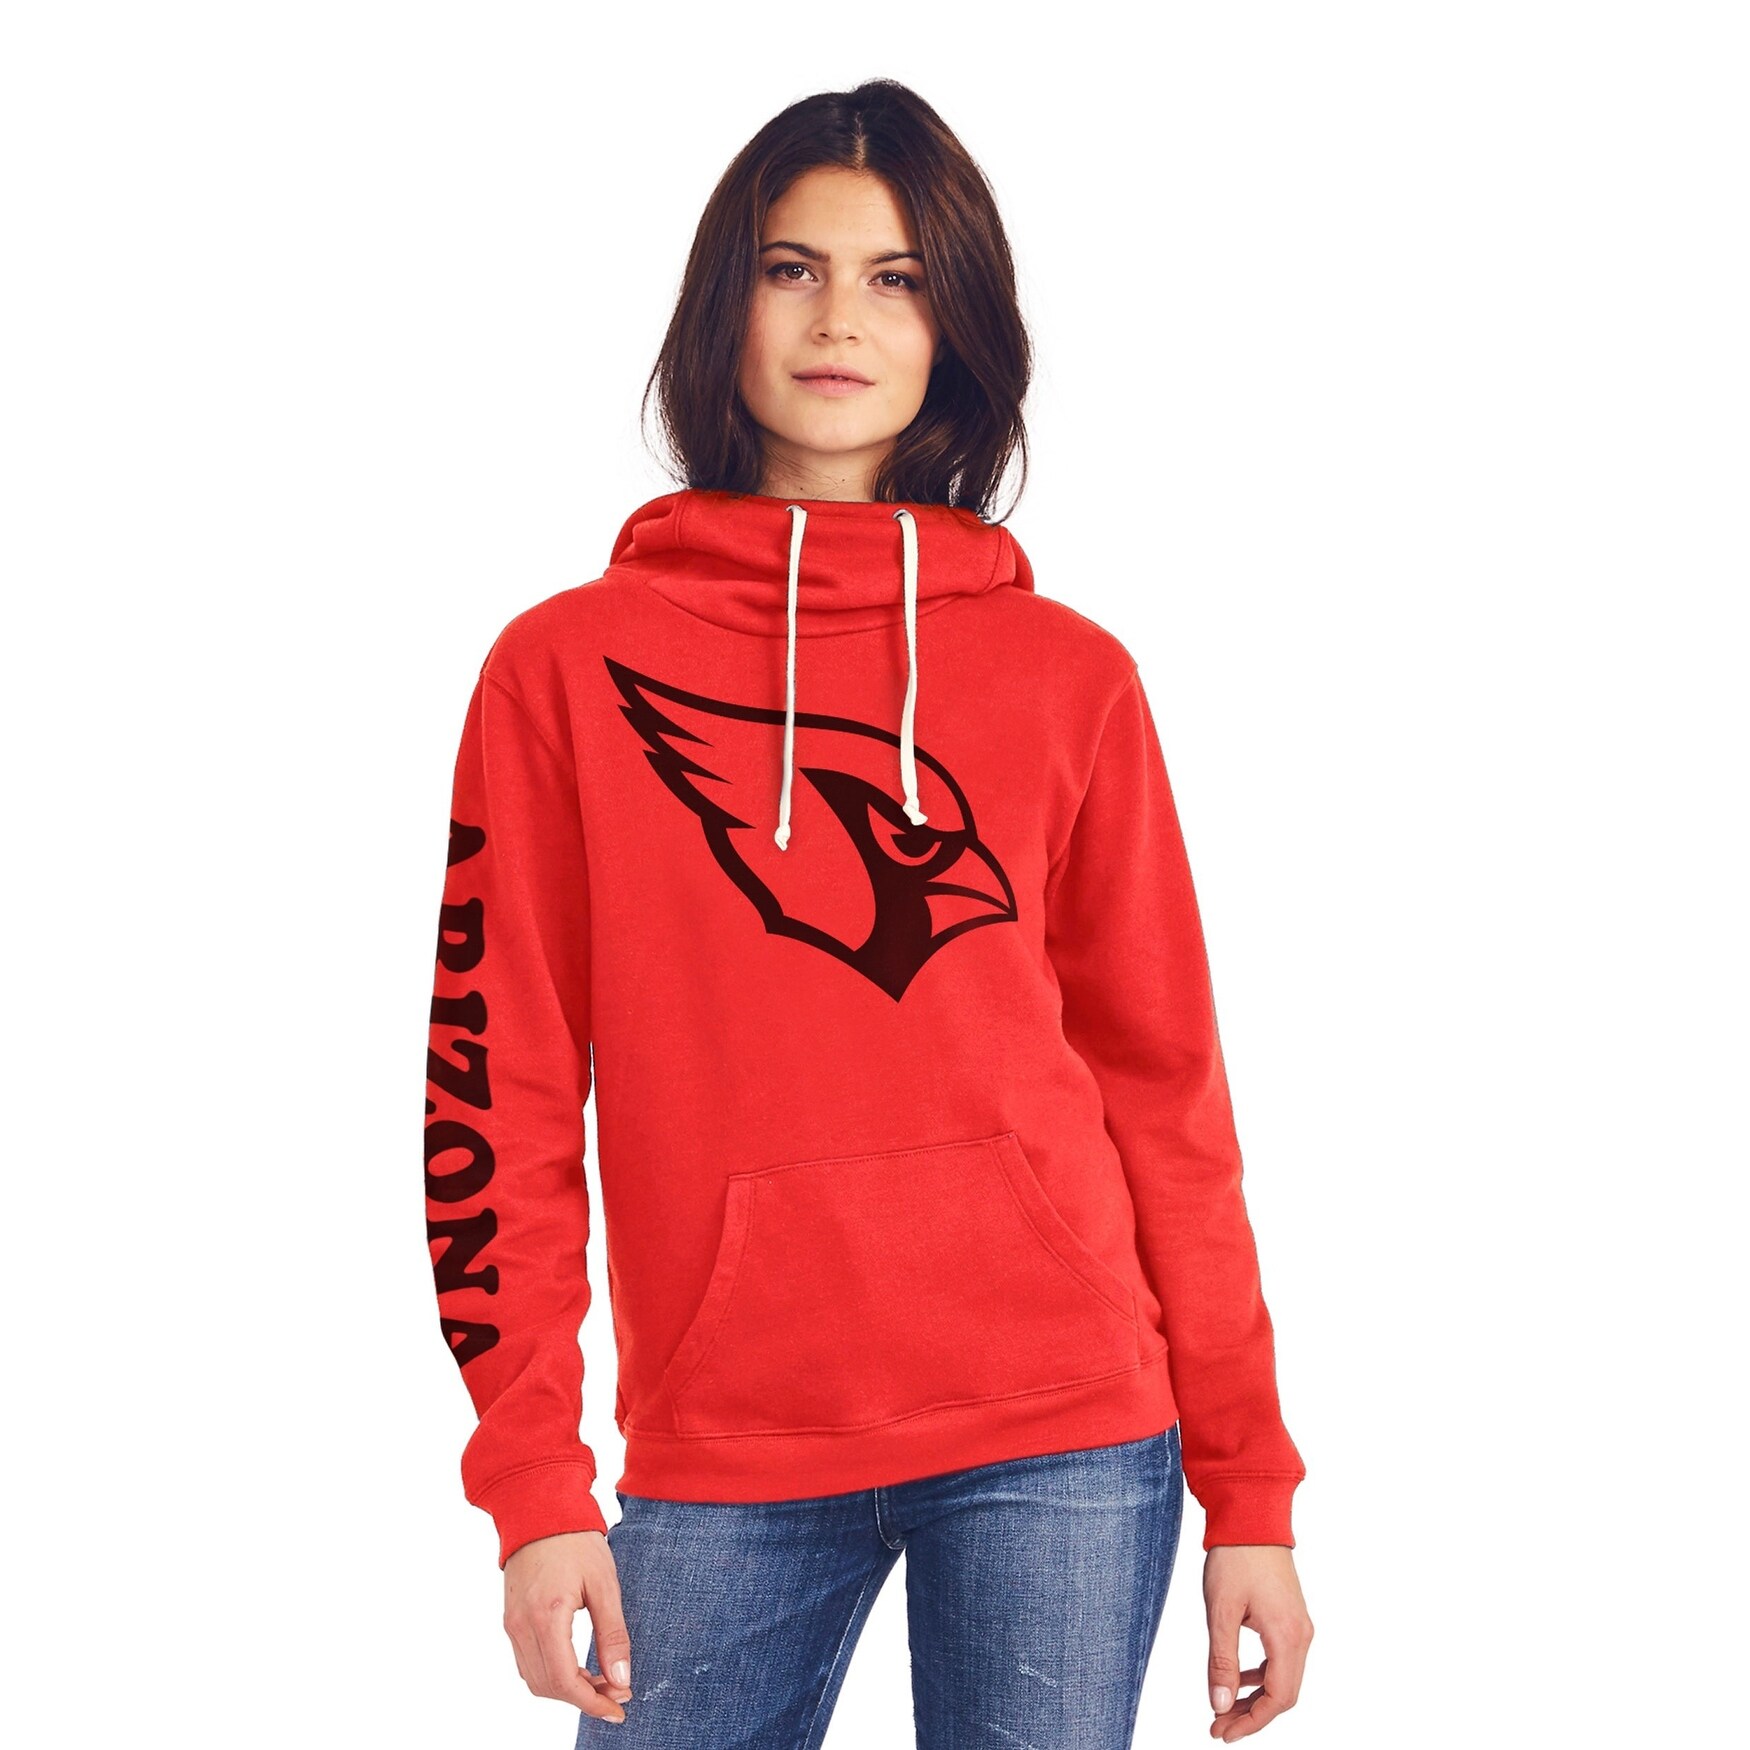 womens arizona cardinals sweatshirt